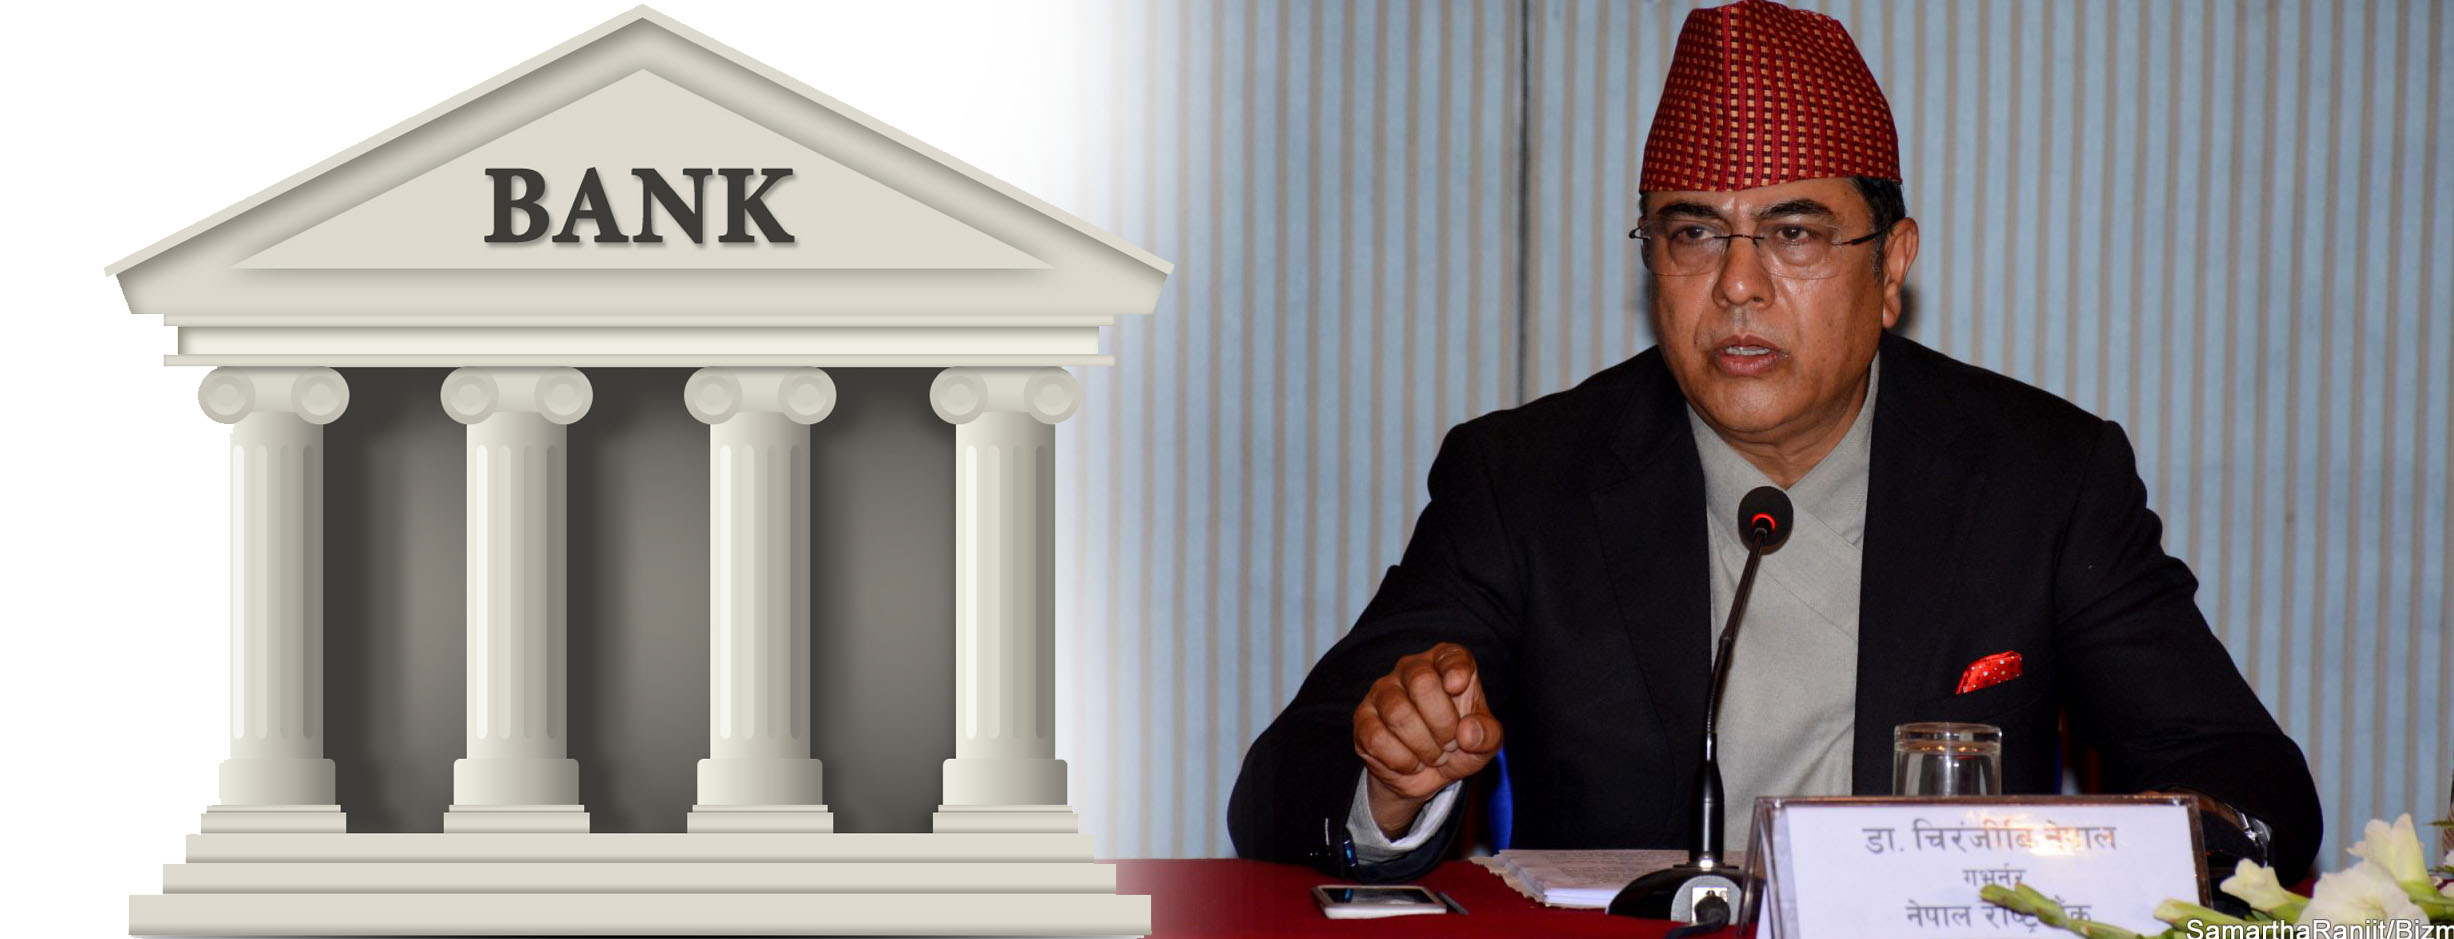 नेपाली  बैंकलाई सम्पत्ति शुद्धीकरणको मुद्दा नलागोस् : गभर्नर